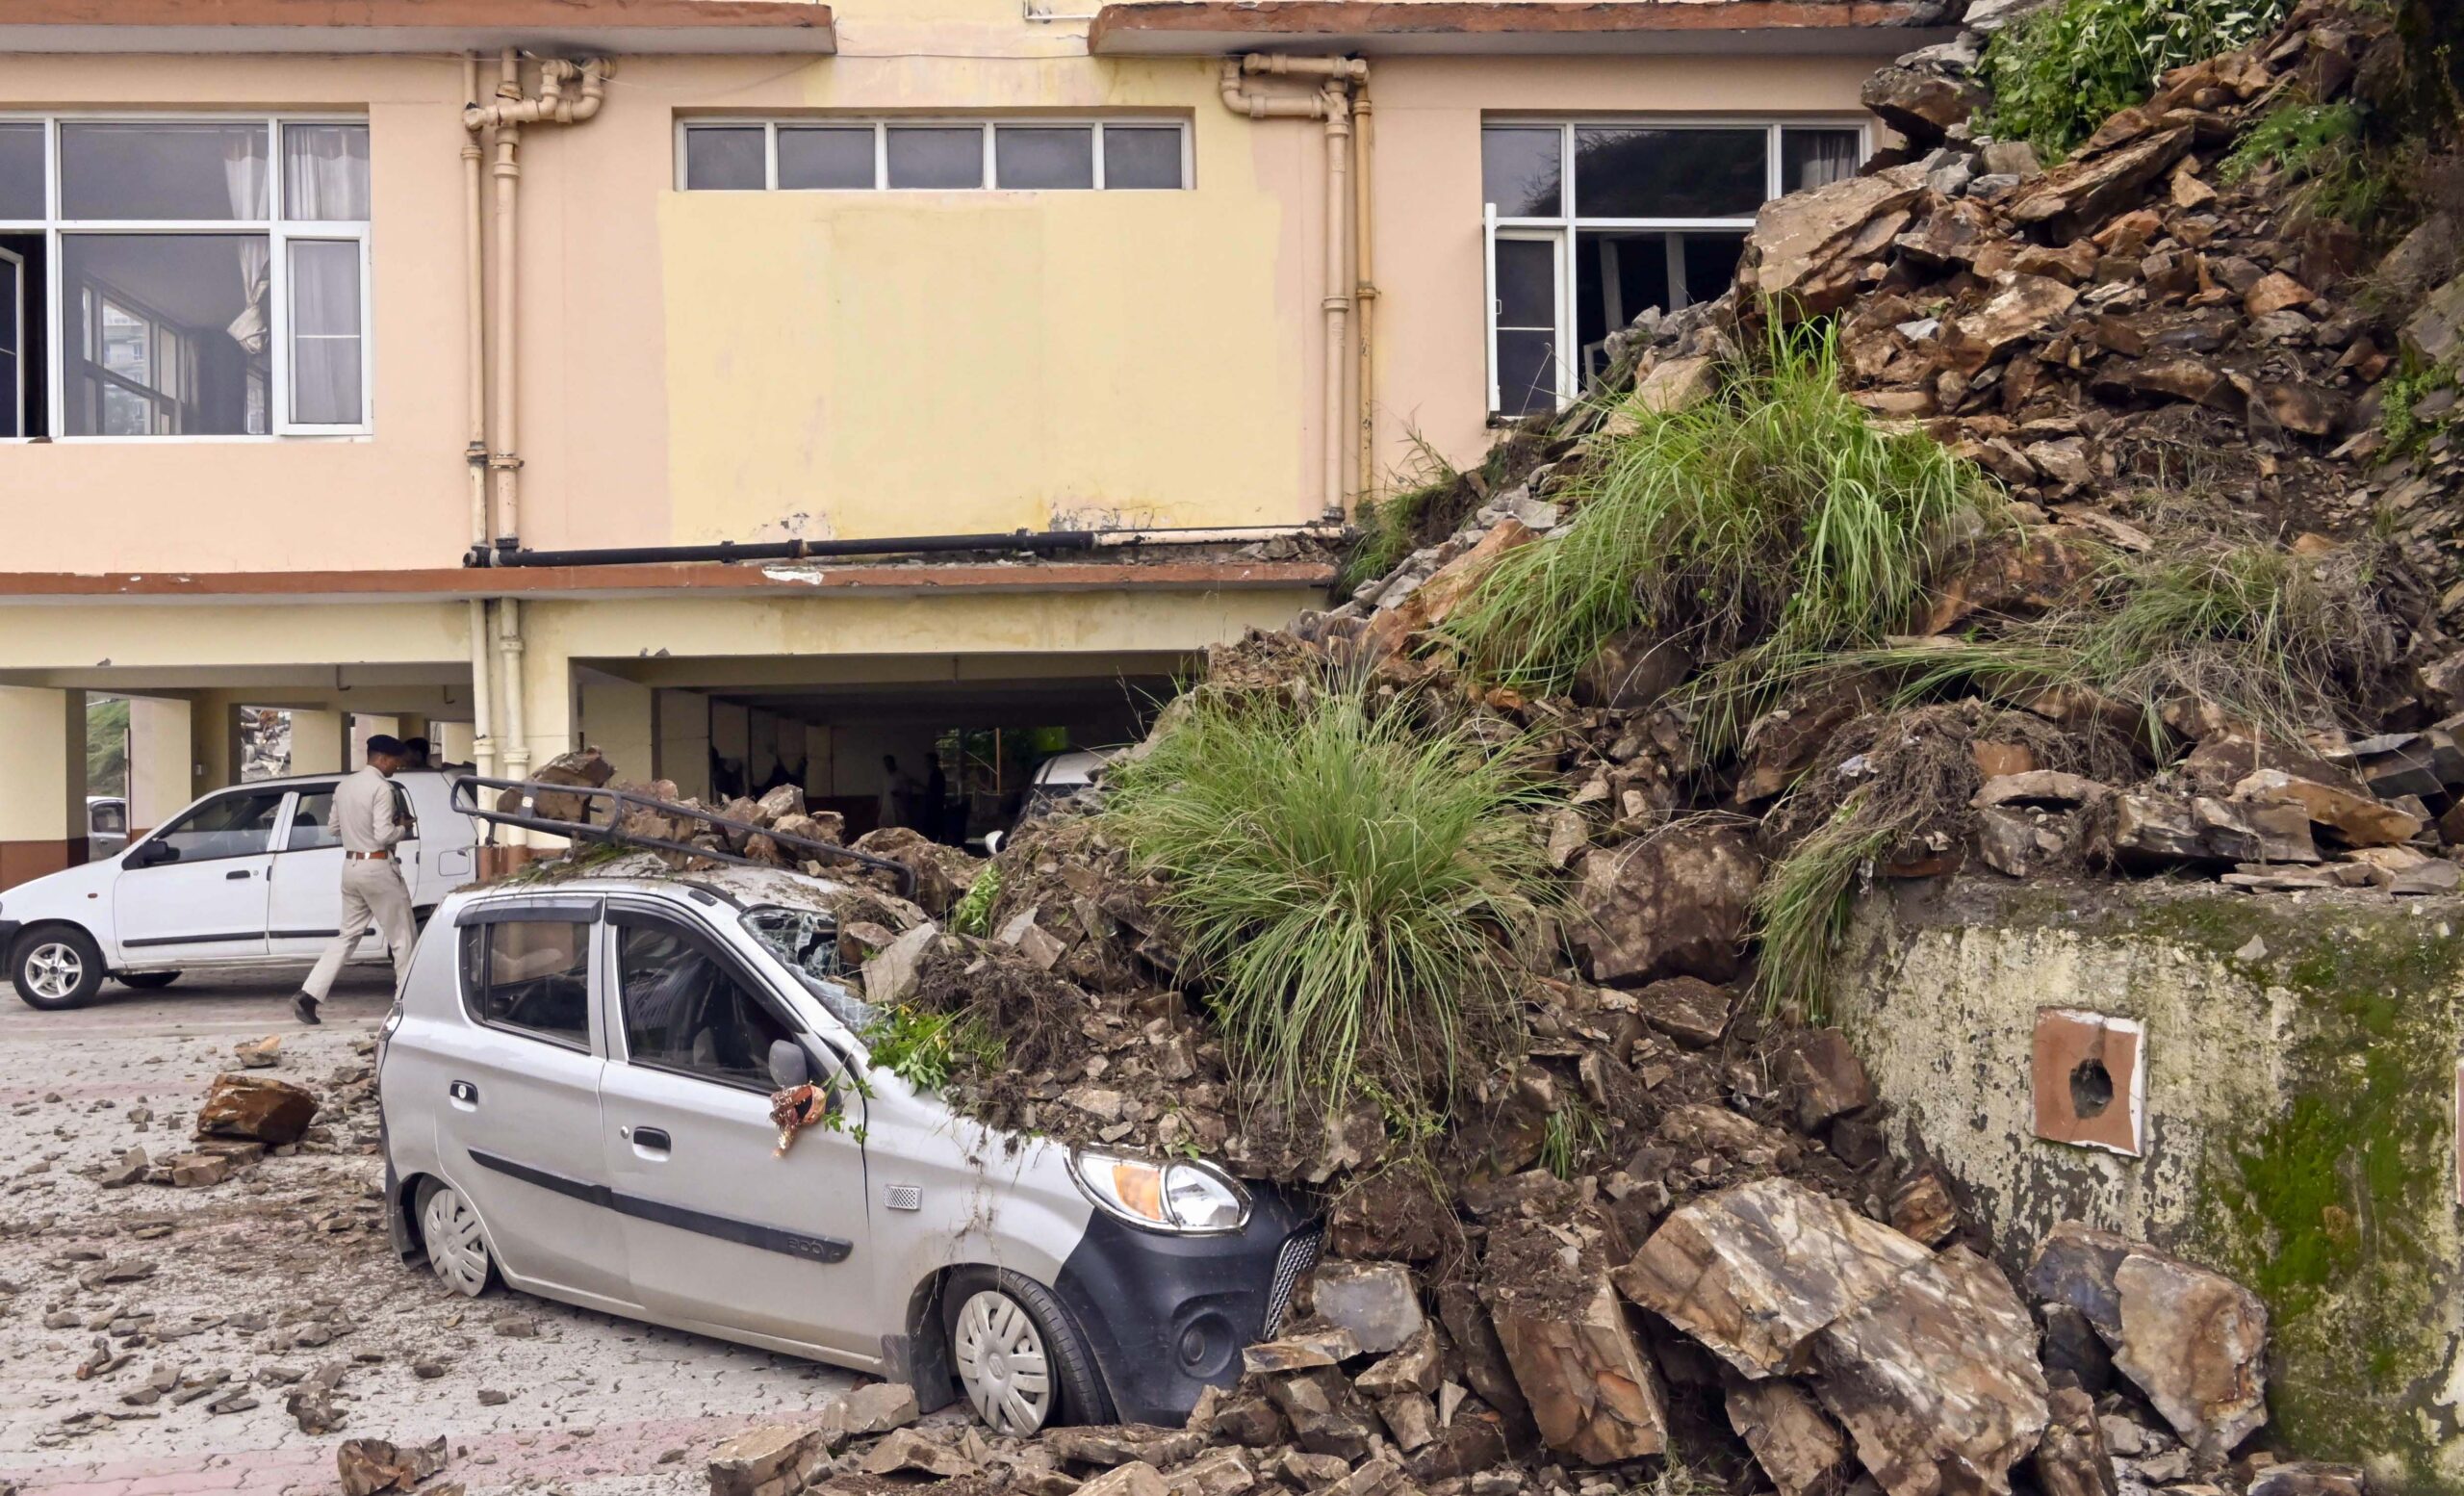 Rudraprayag: Over 10 missing due to landslide, investigation is on